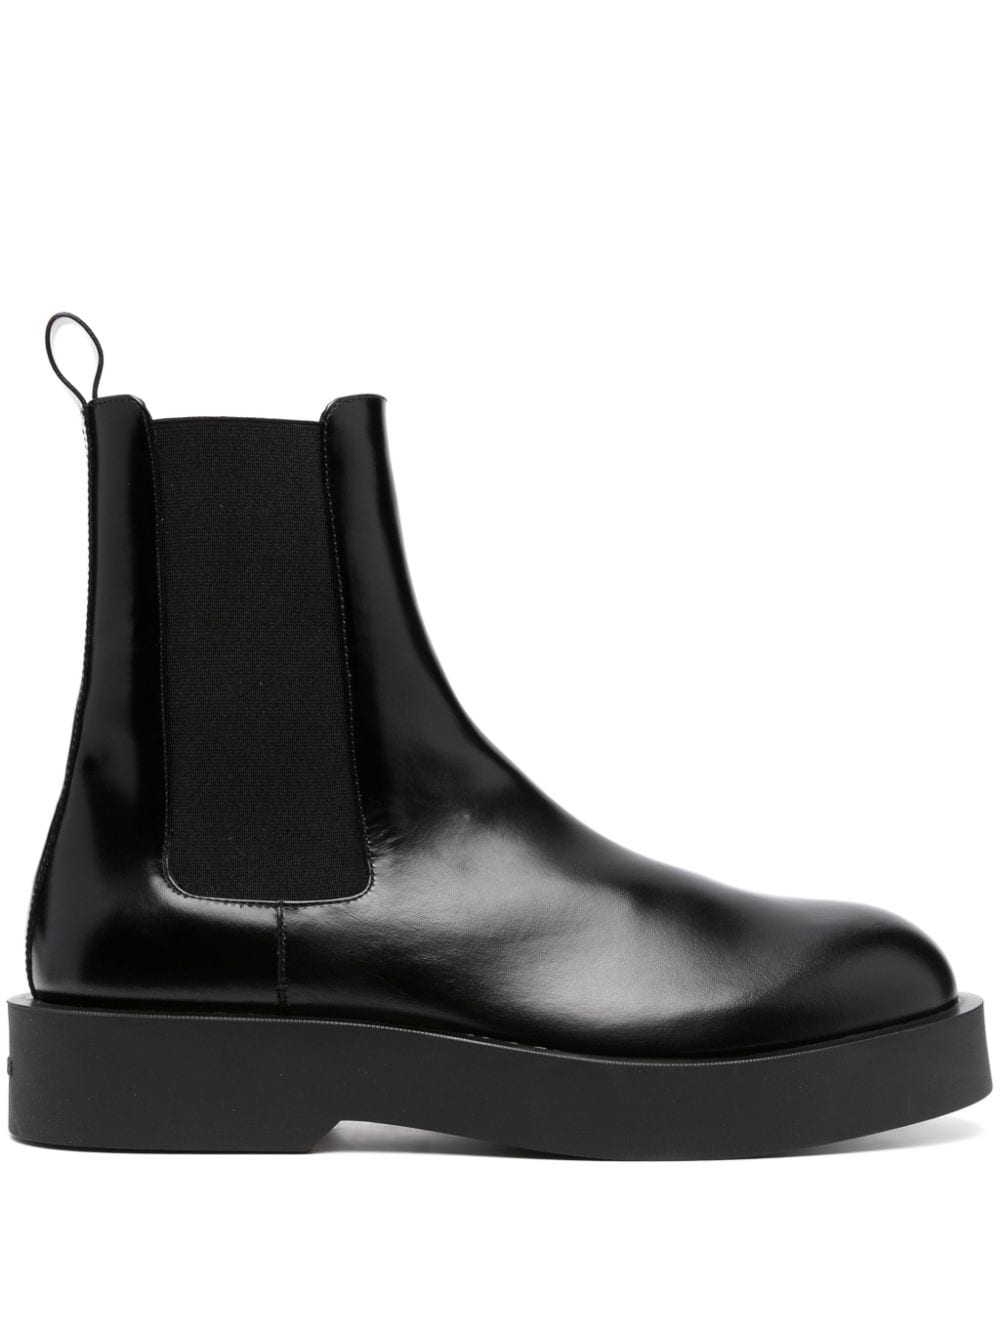 Jil Sander leather Chelsea boots - Black von Jil Sander